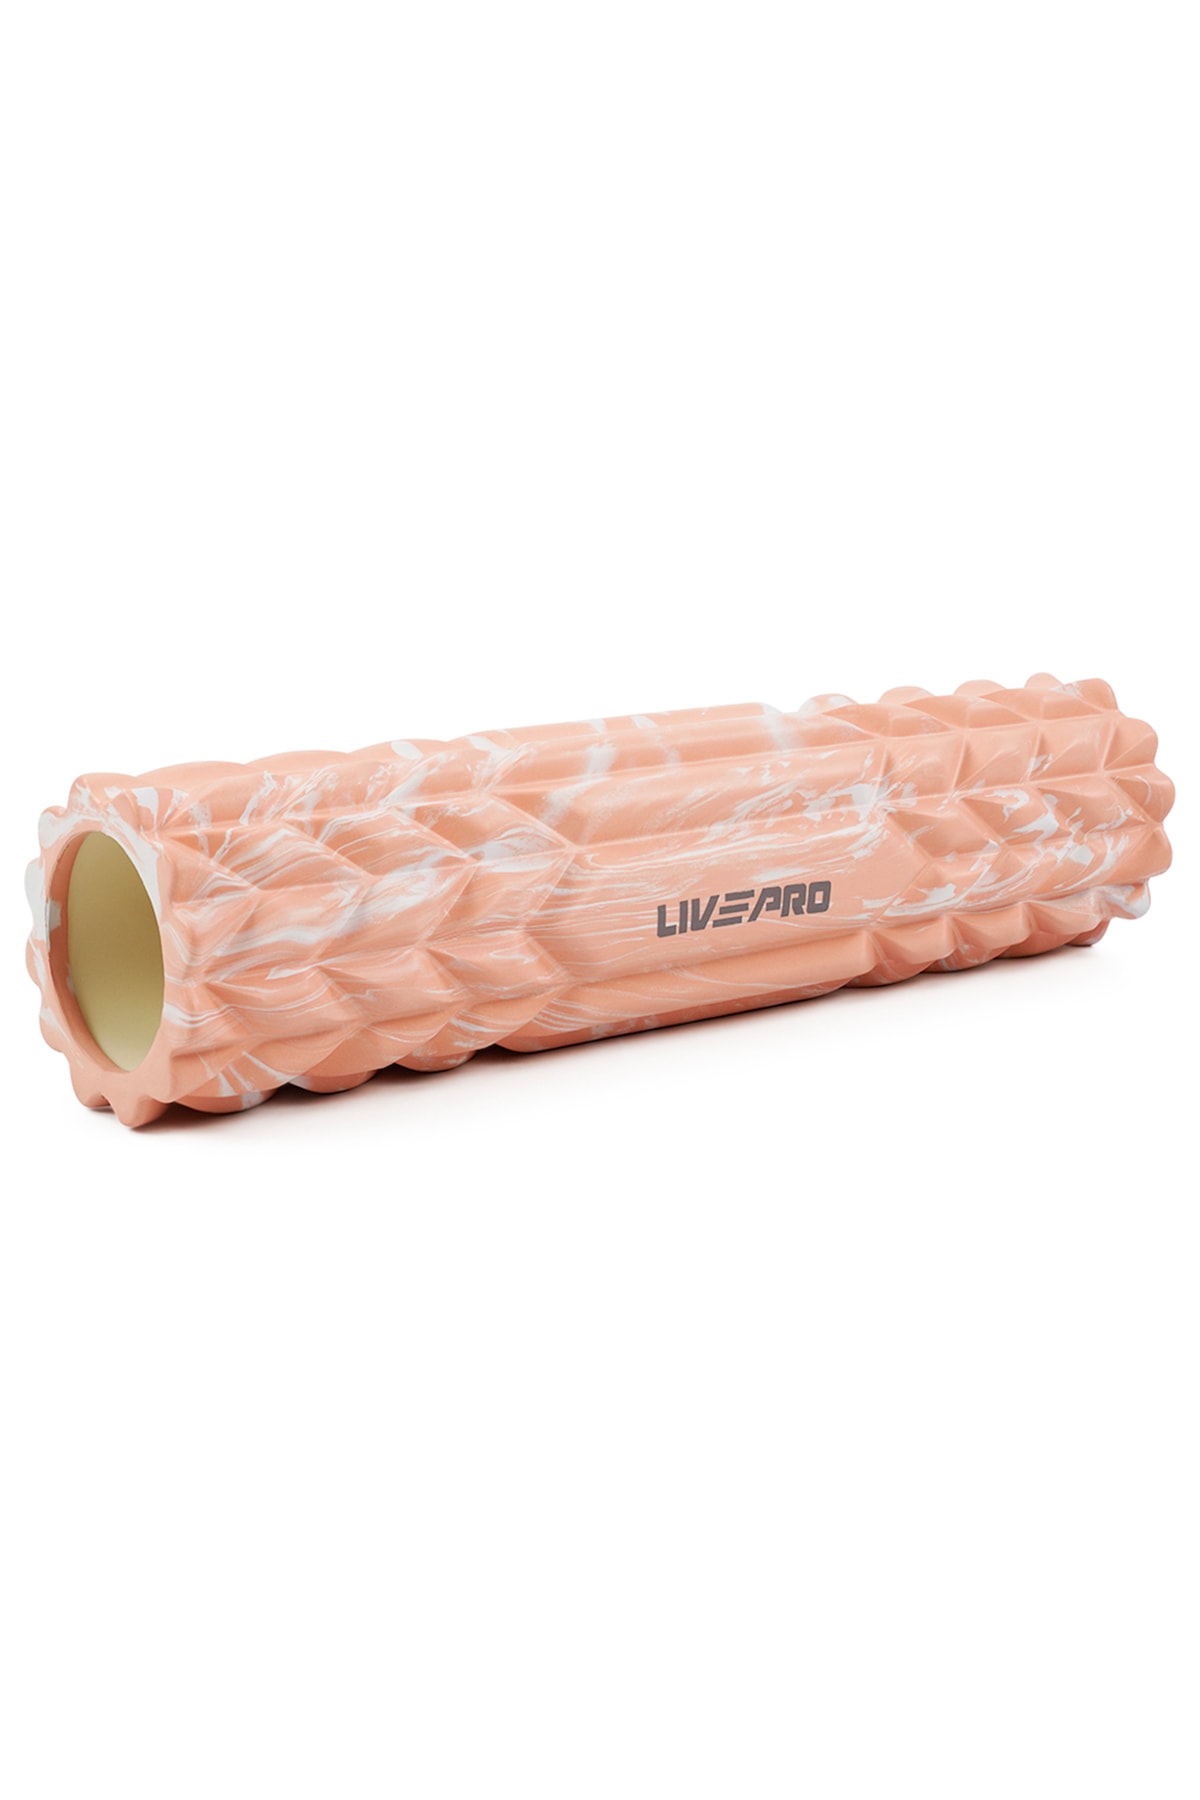 LIVEPRO Lp8233-og Foam Roller